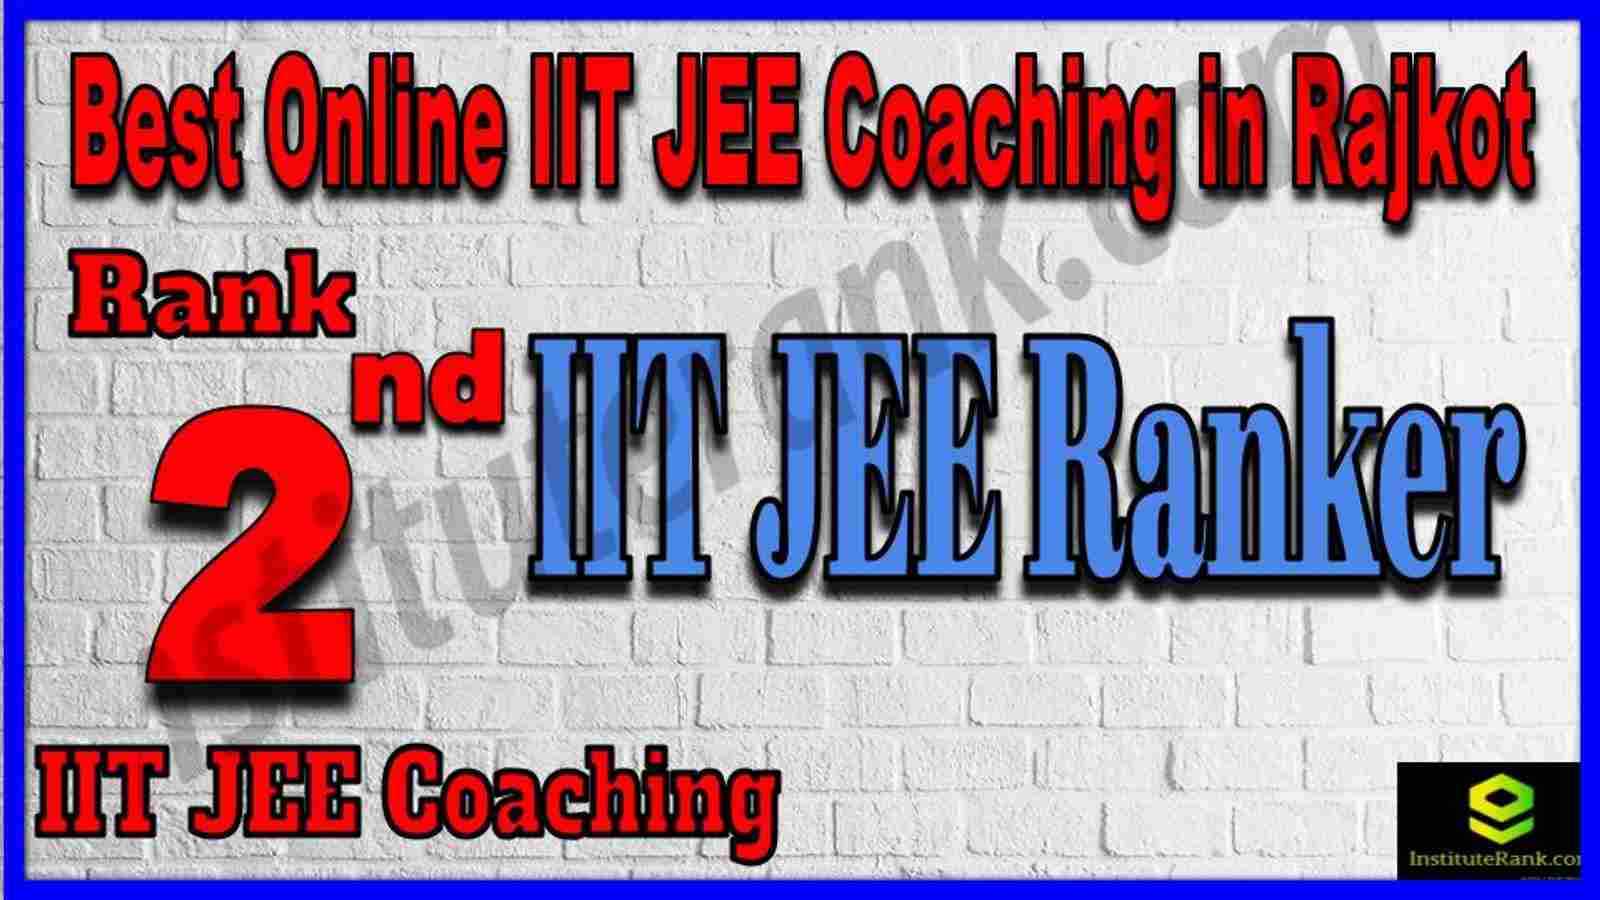 Rank 2nd Best Online IIT JEE Coaching in Rajkot